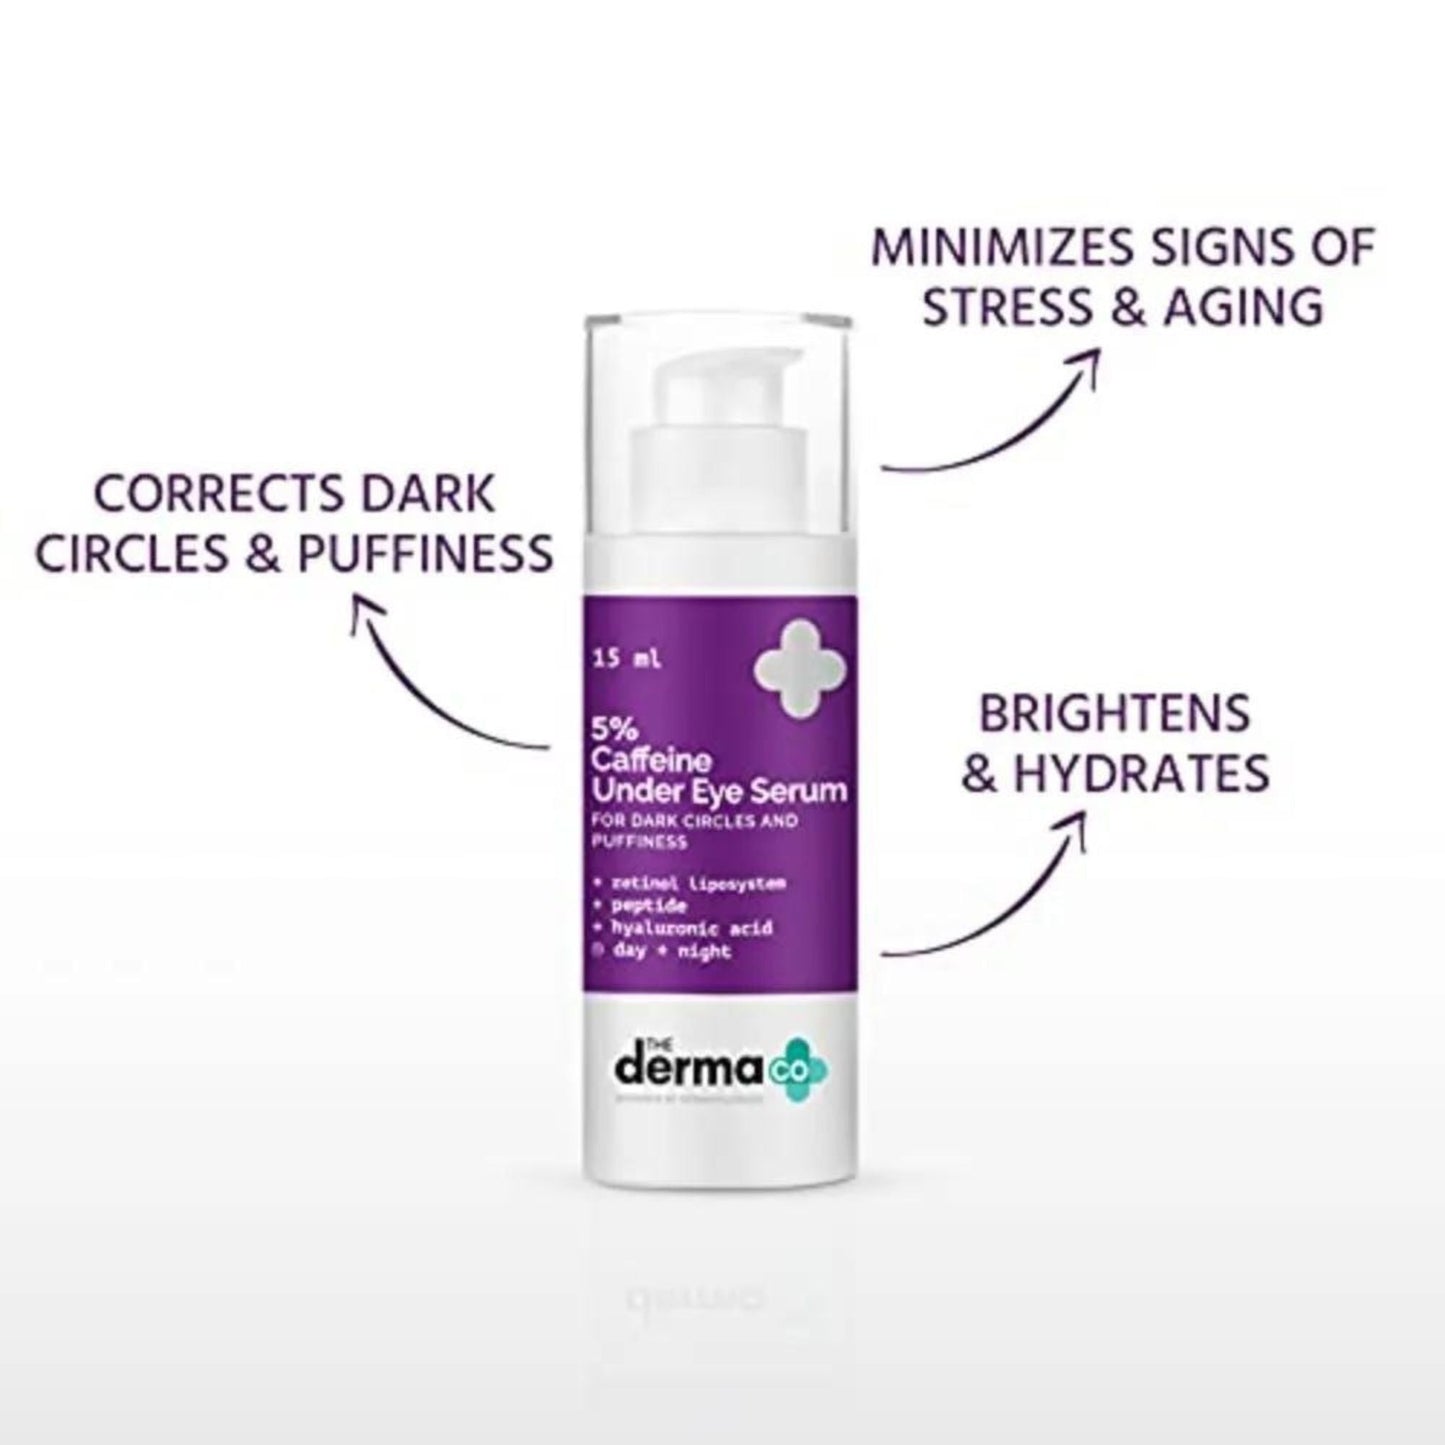 The Derma Co 5% Caffeine Under Eye Serum for Dark Circles & Puffiness